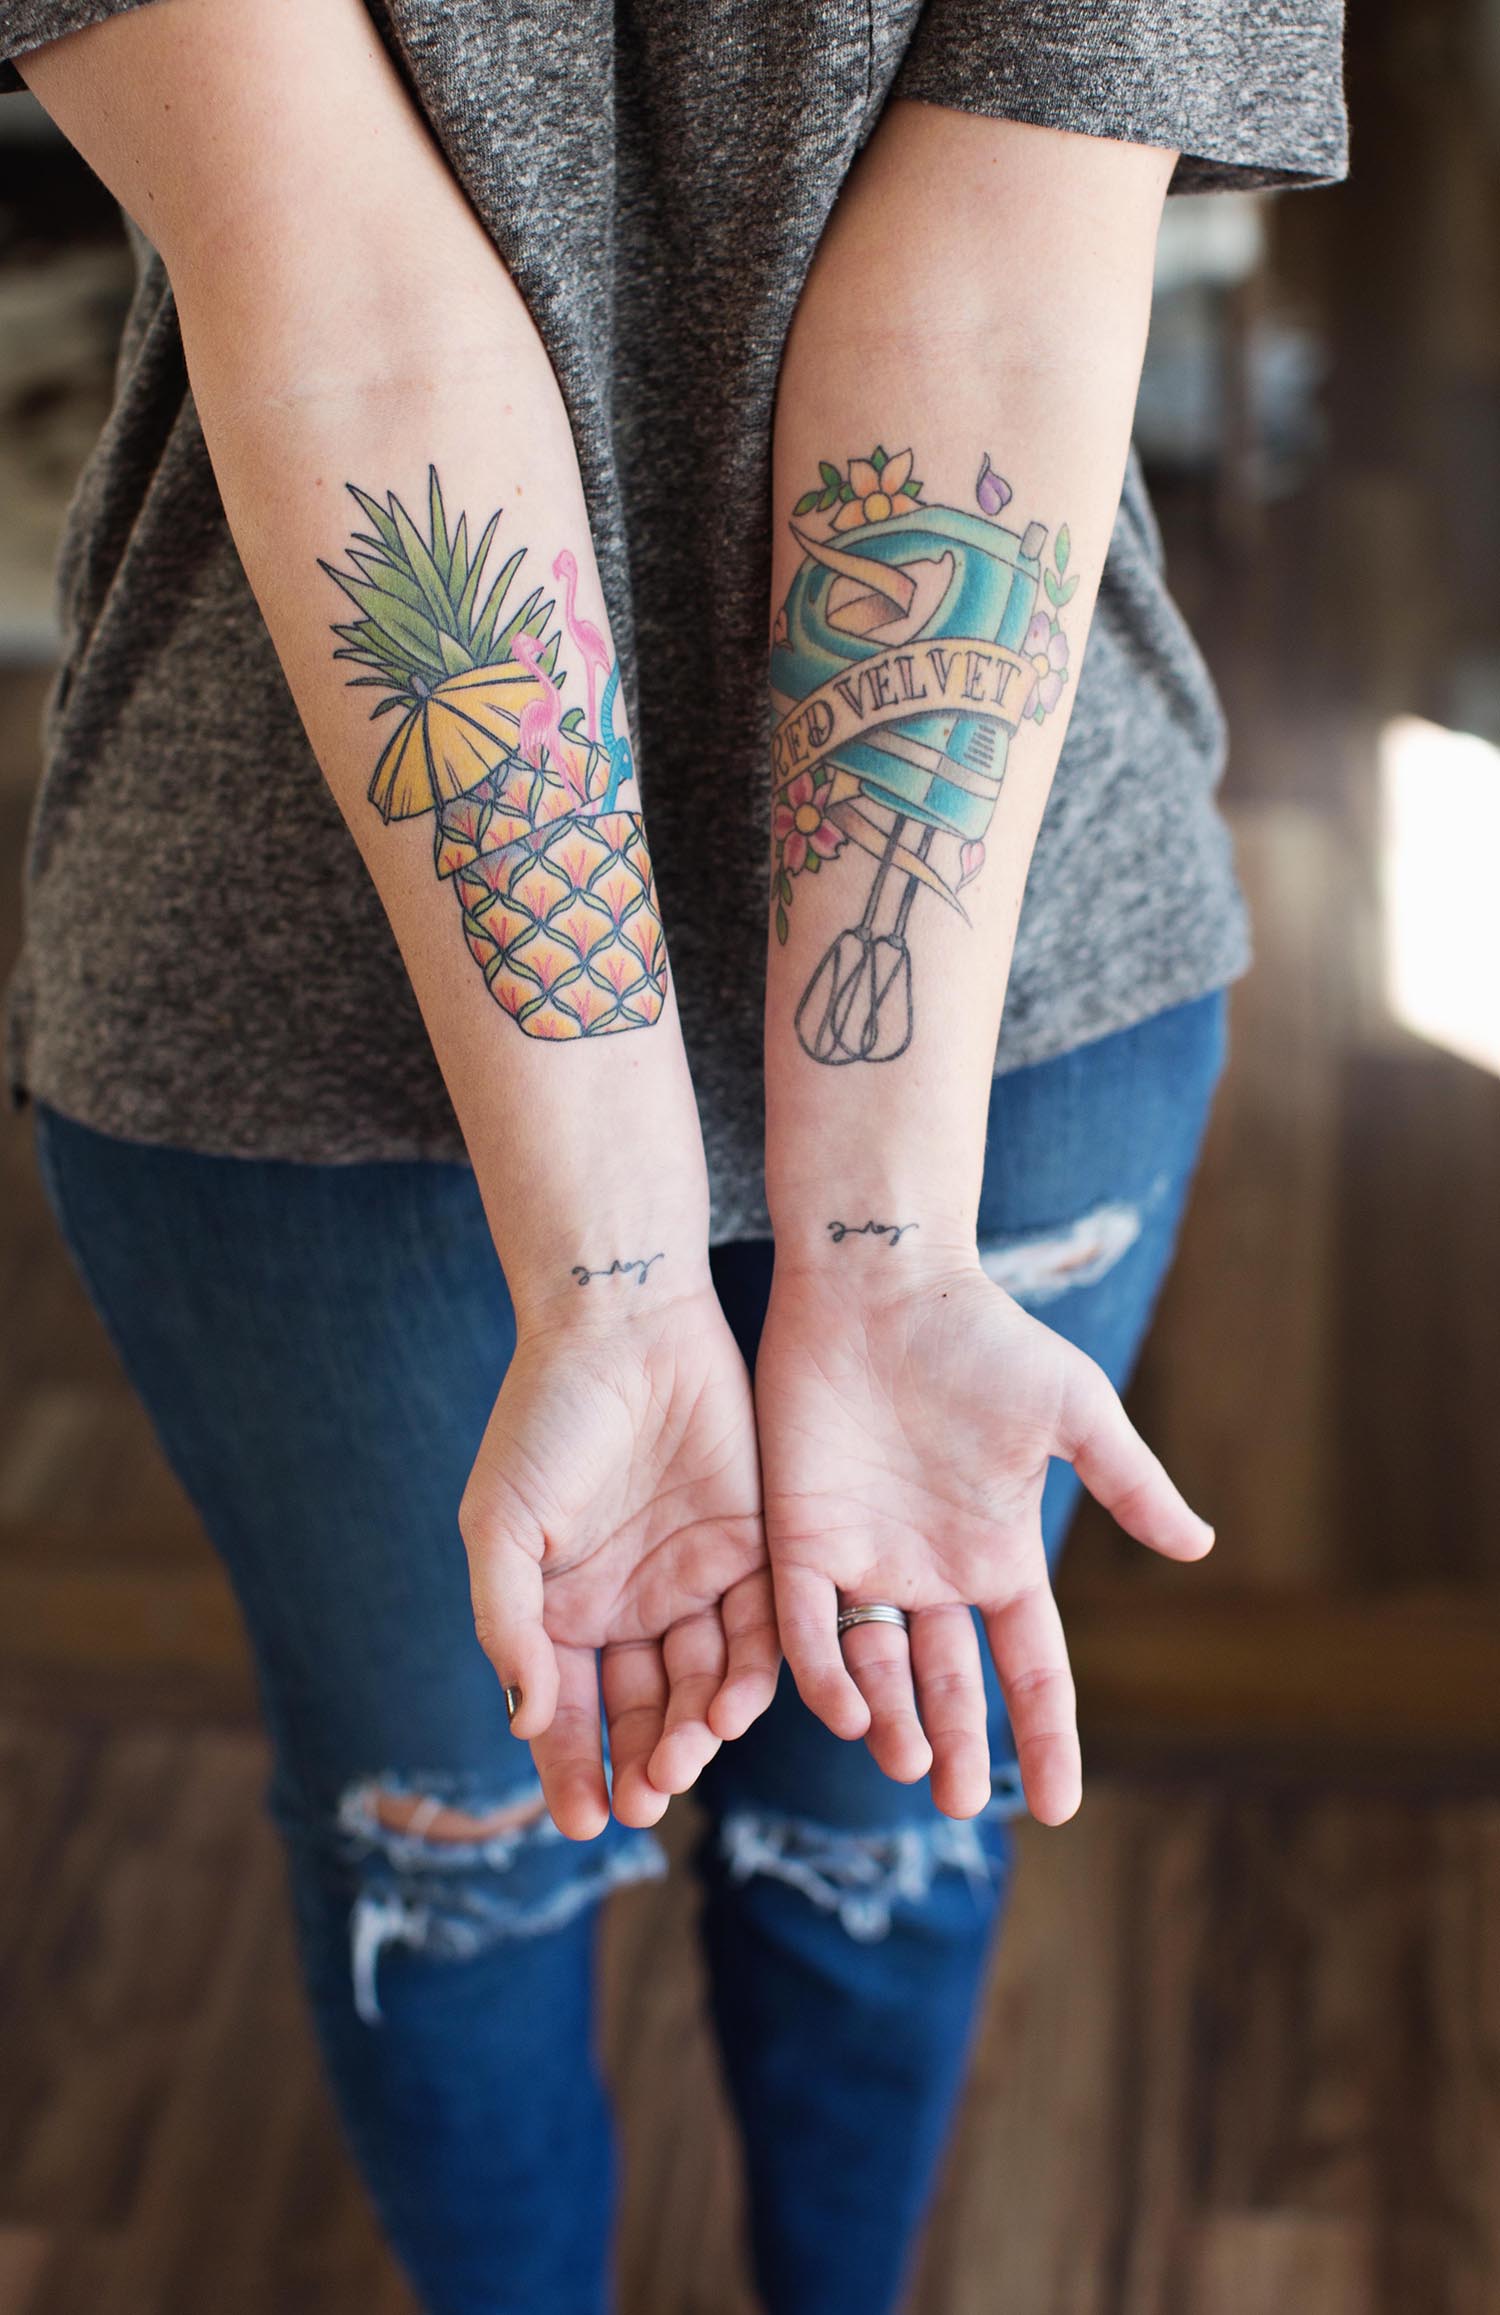 Emma Chapman's tattoos